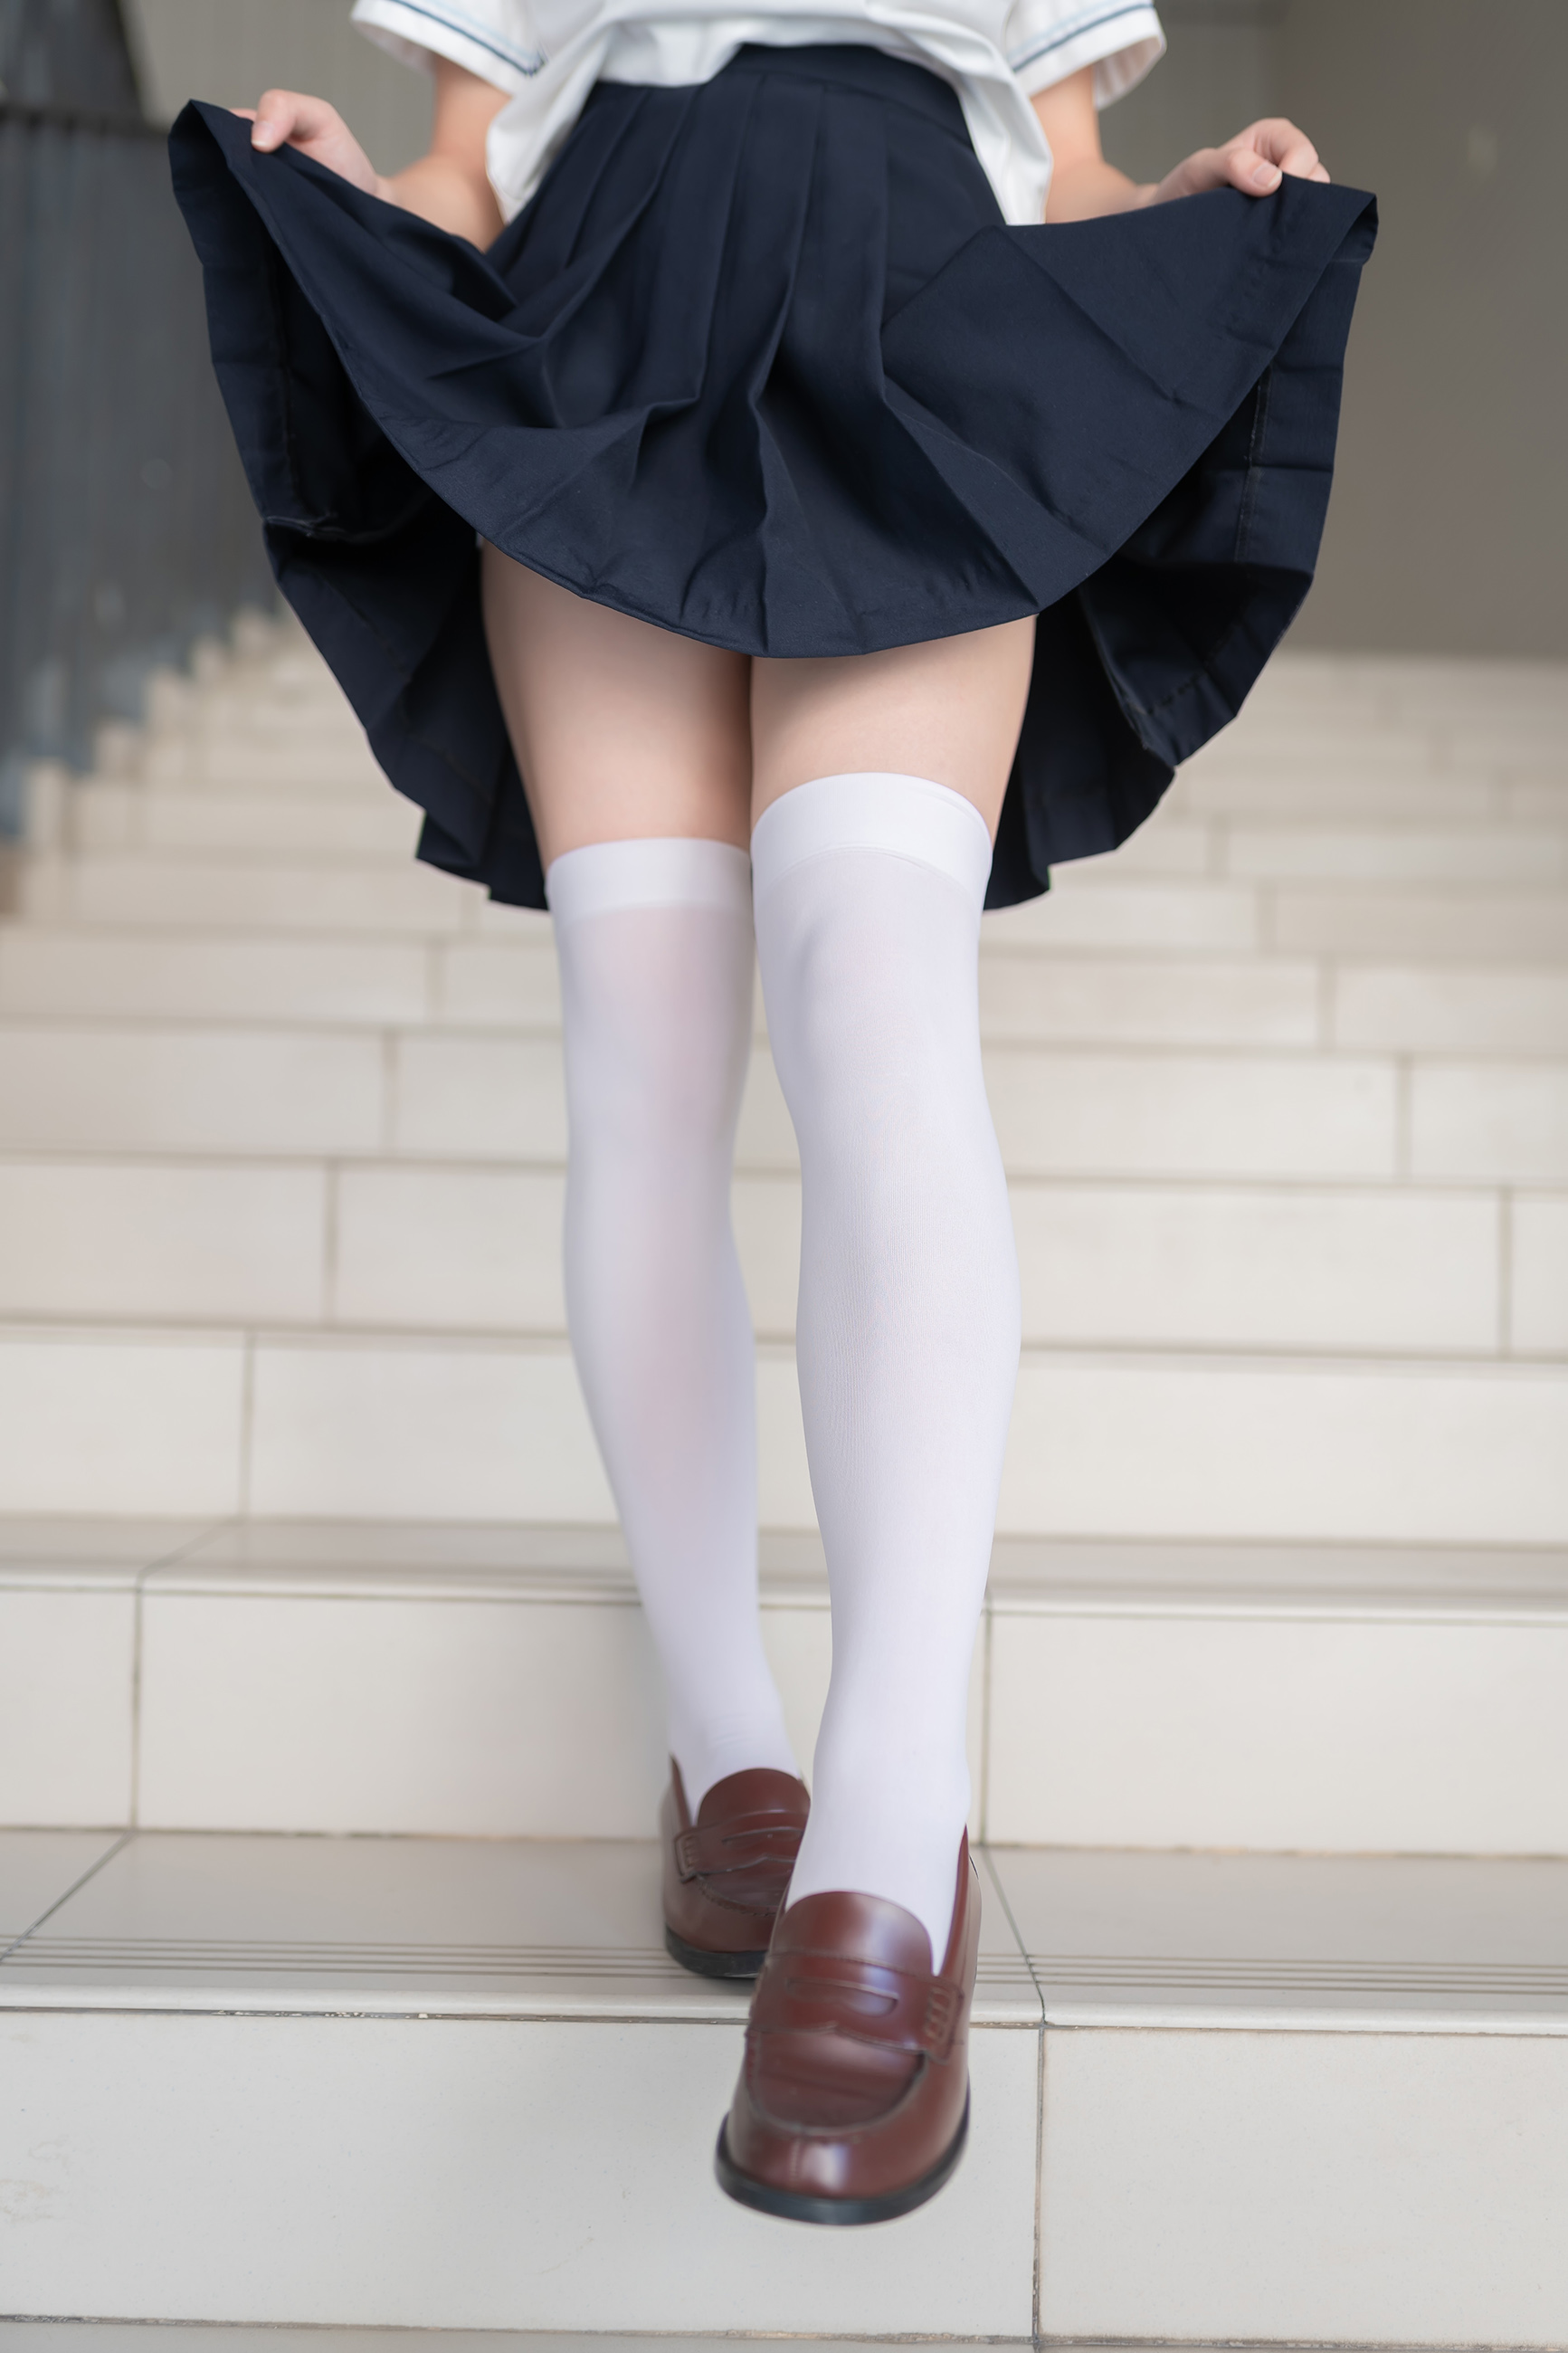 楼梯上的白色丝袜少女[33P]